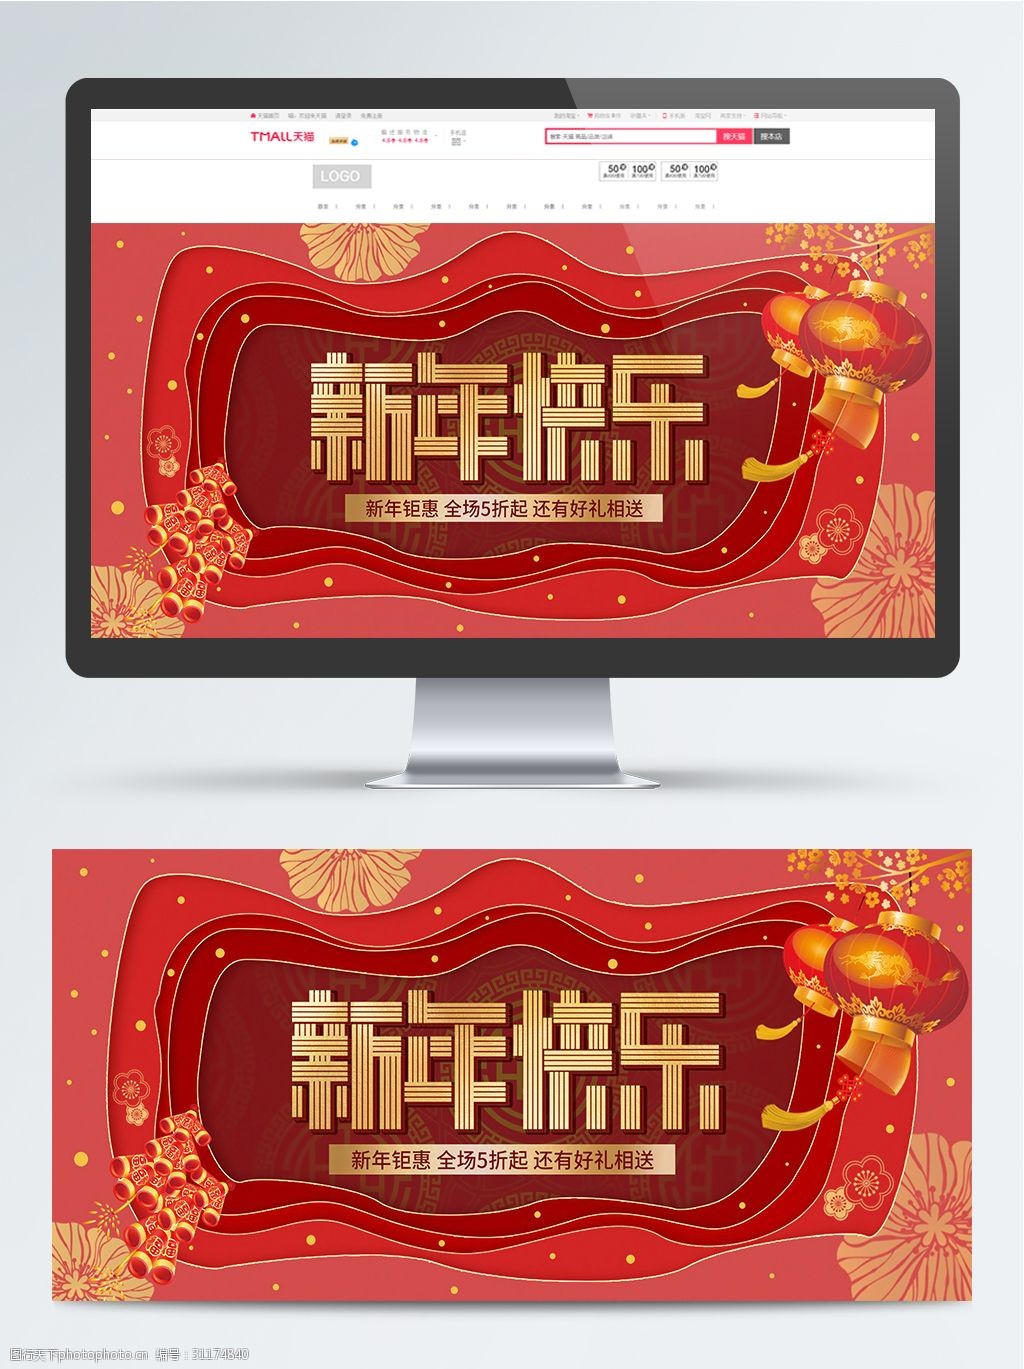 新年快乐电商促销活动宣传banner